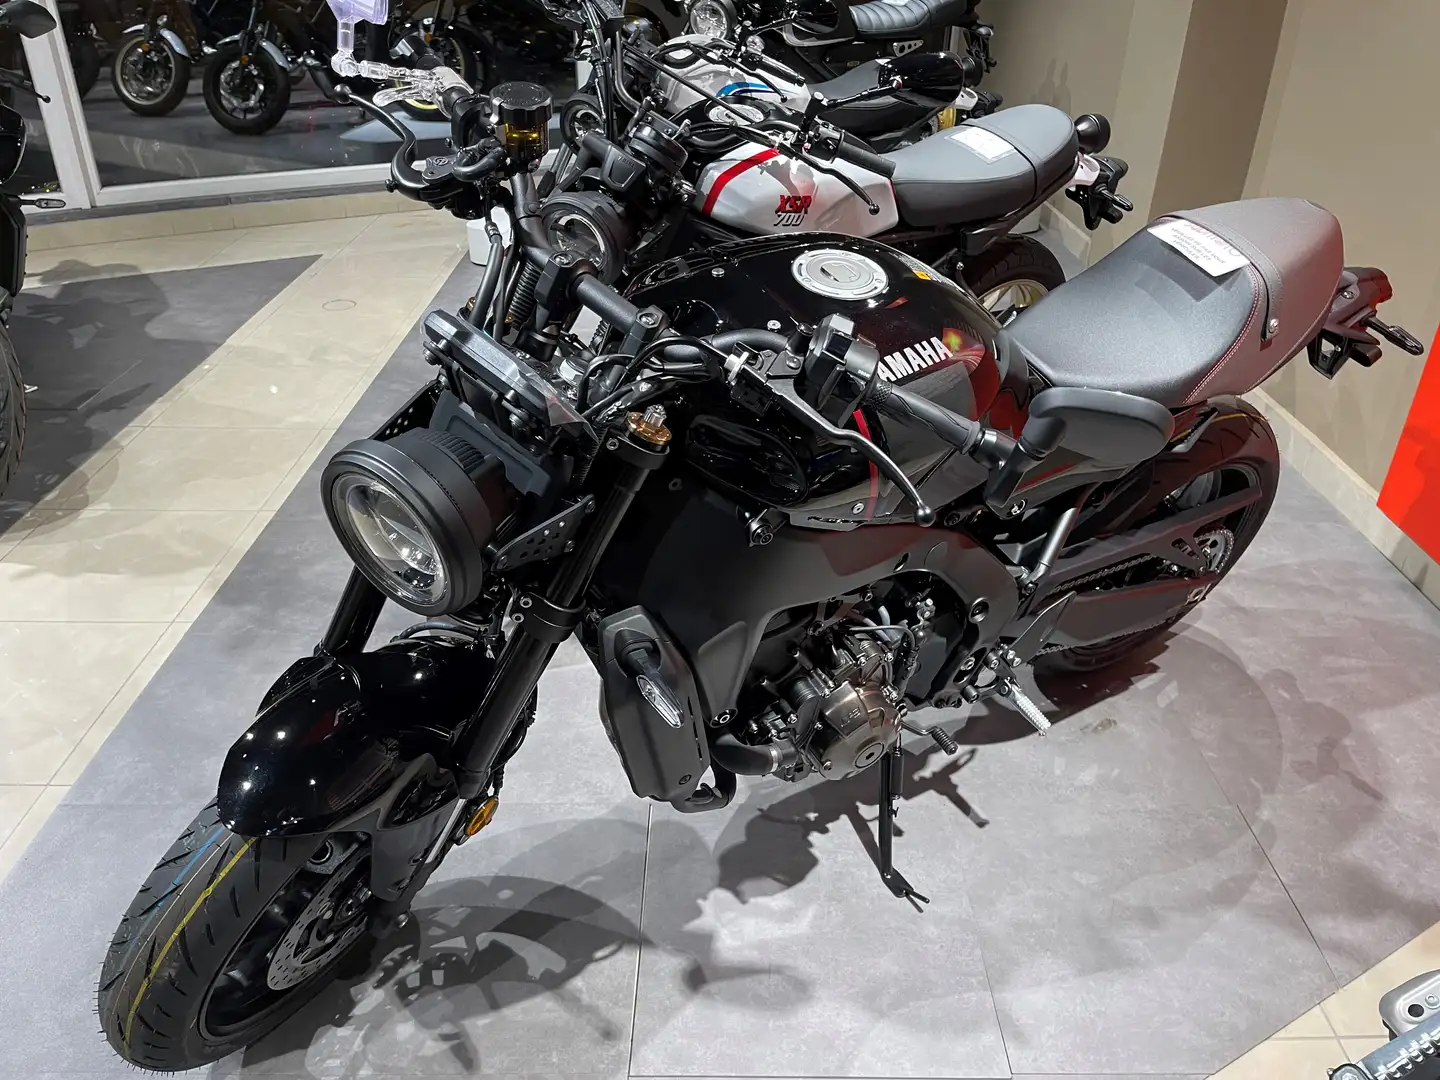 Yamaha XSR 900 Neuve - Disponible dans tous les coloris Negru - 2